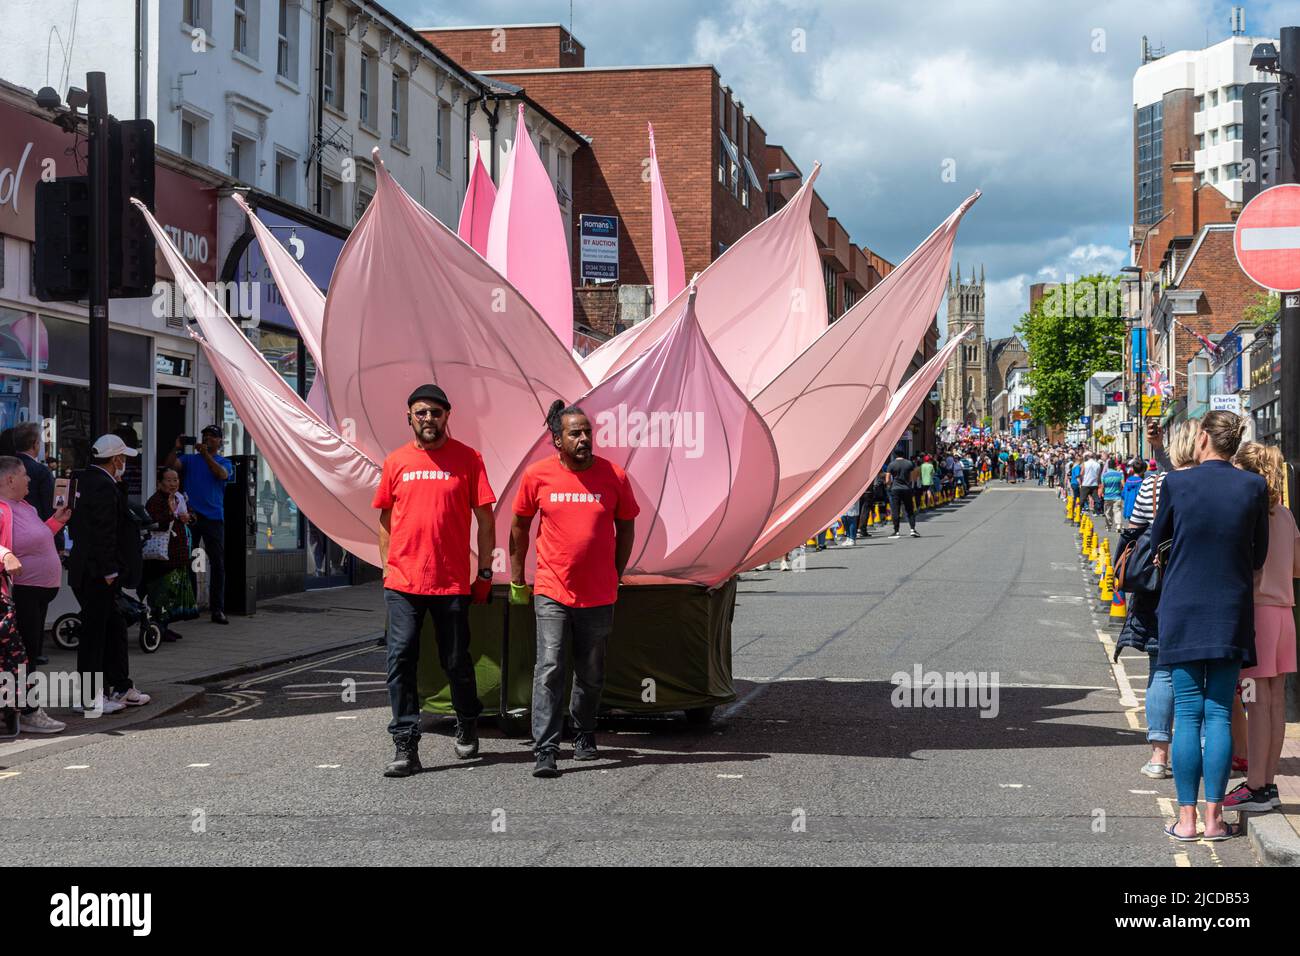 La Grand Parade al Victoria Day, un evento annuale ad Aldershot, Hampshire, Inghilterra, Regno Unito. Nutkhut artisti di performance con un fiore gigante di loto Foto Stock